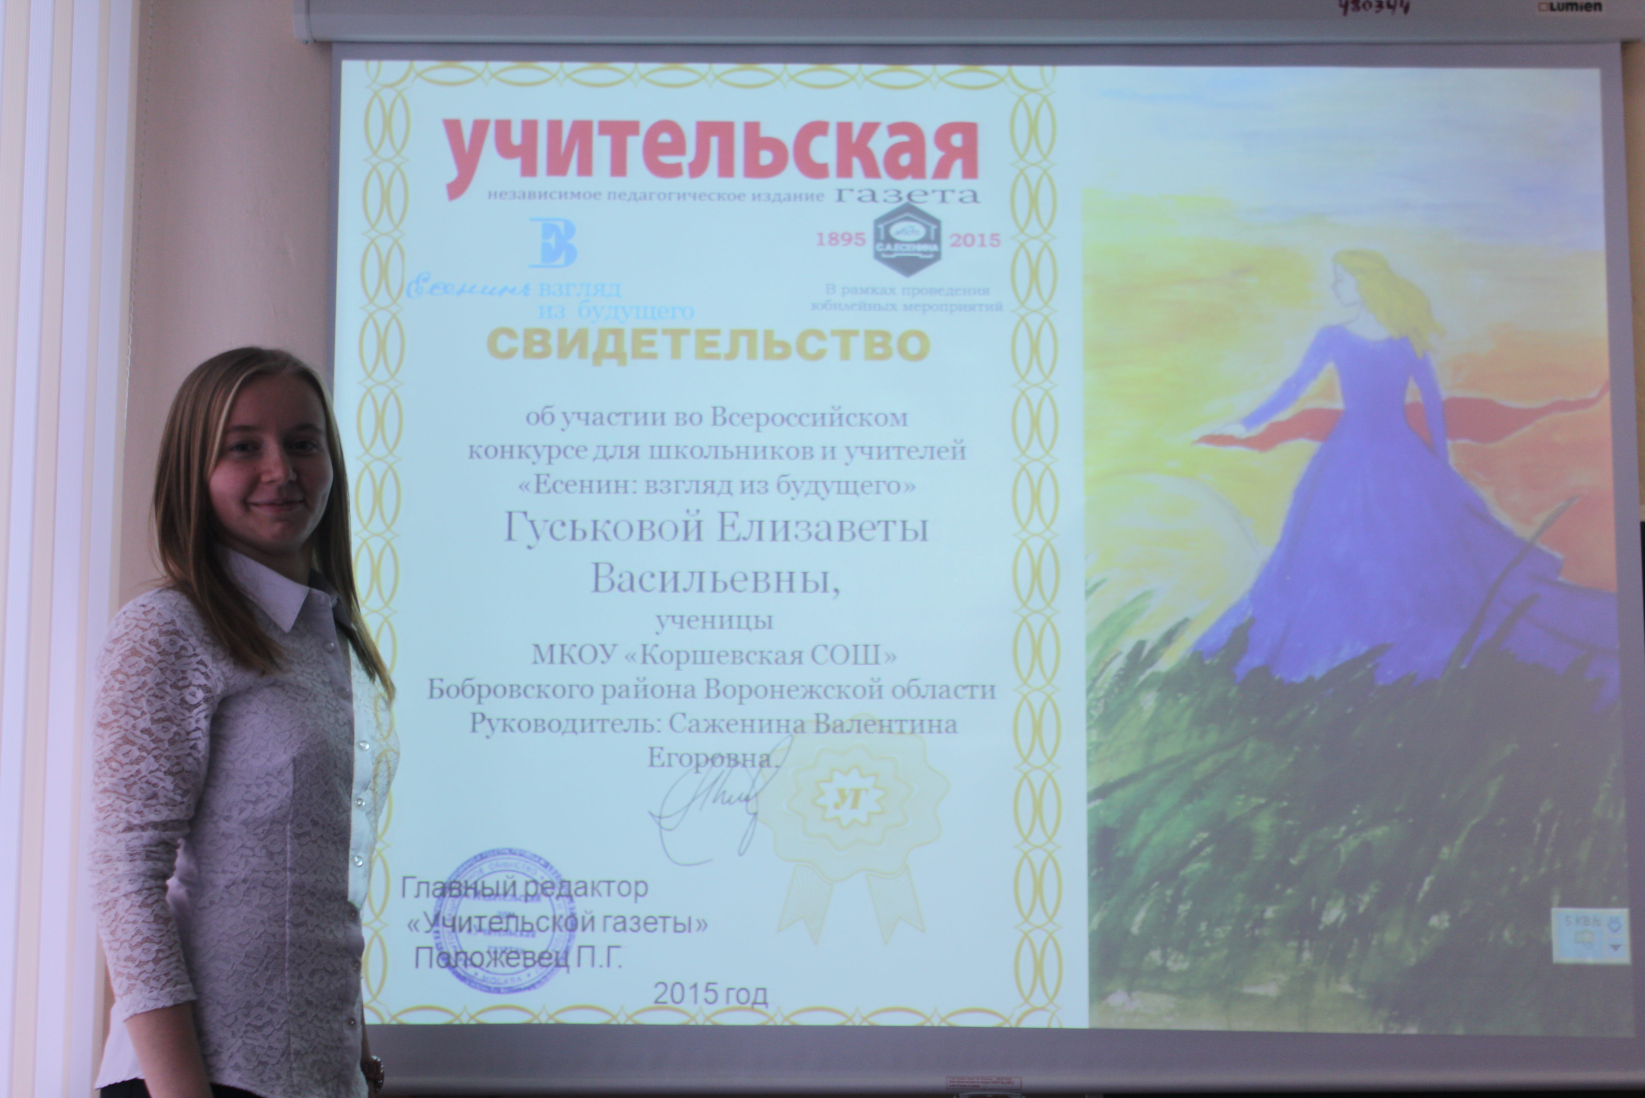 Фотоальбом, посвящённый Году литературы в РФ